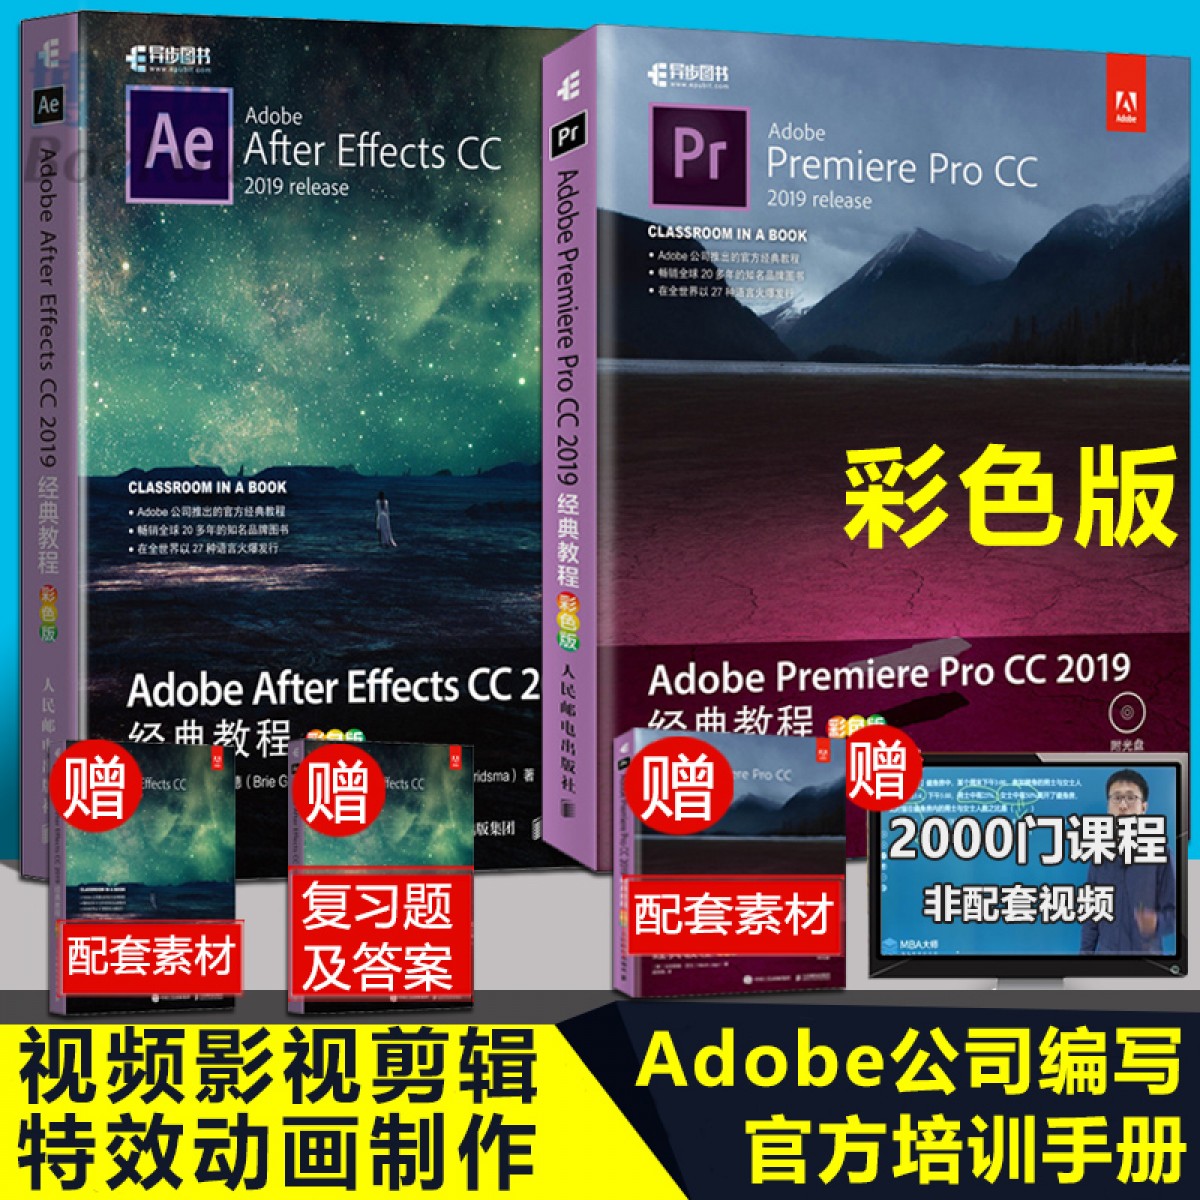 【彩色版】 Adobe After Effects CC+Adobe Premiere Pro CC 2019经典教程 ae pr入门教程书籍 彩色版 Adobe官方教程 零基础自学